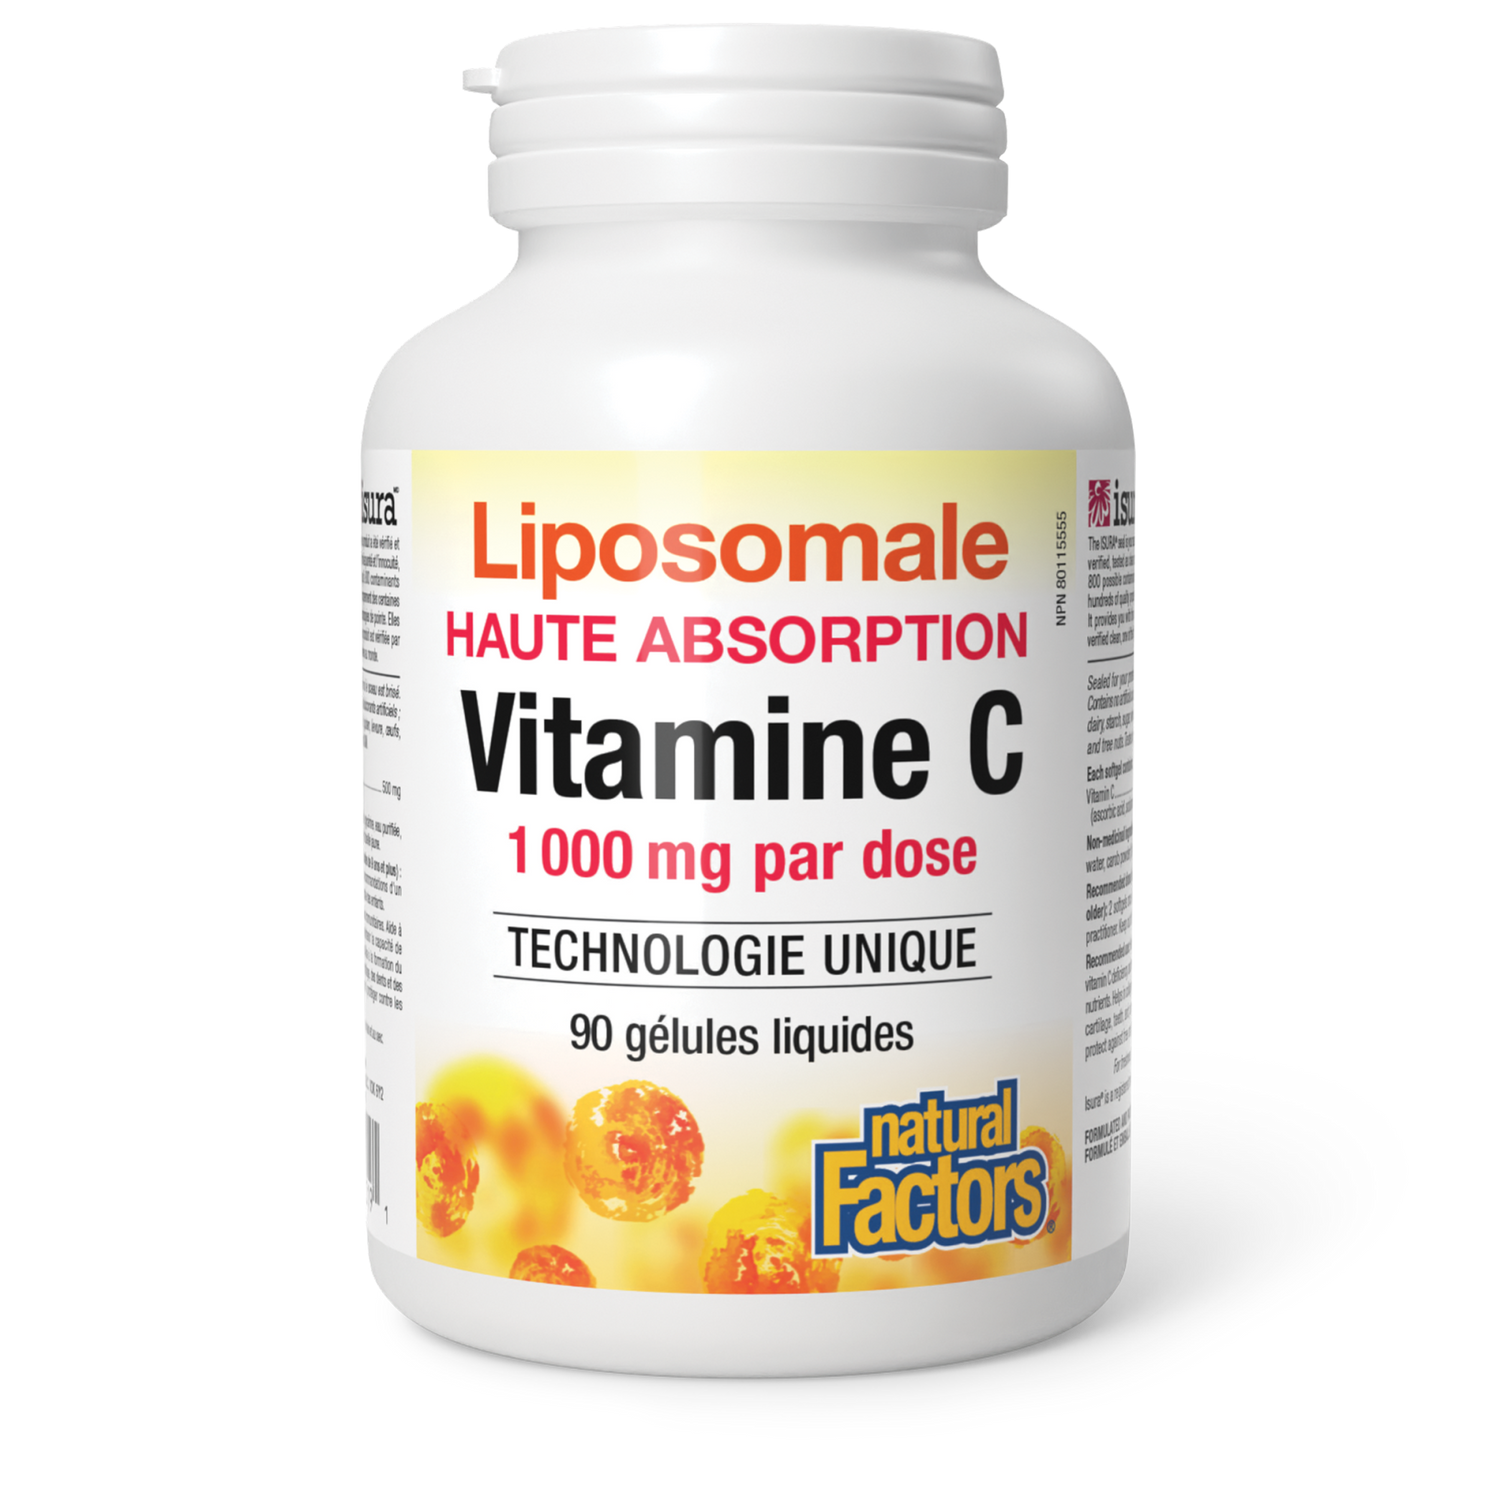 Vitamine C liposomale, Natural Factors|v|image|1319